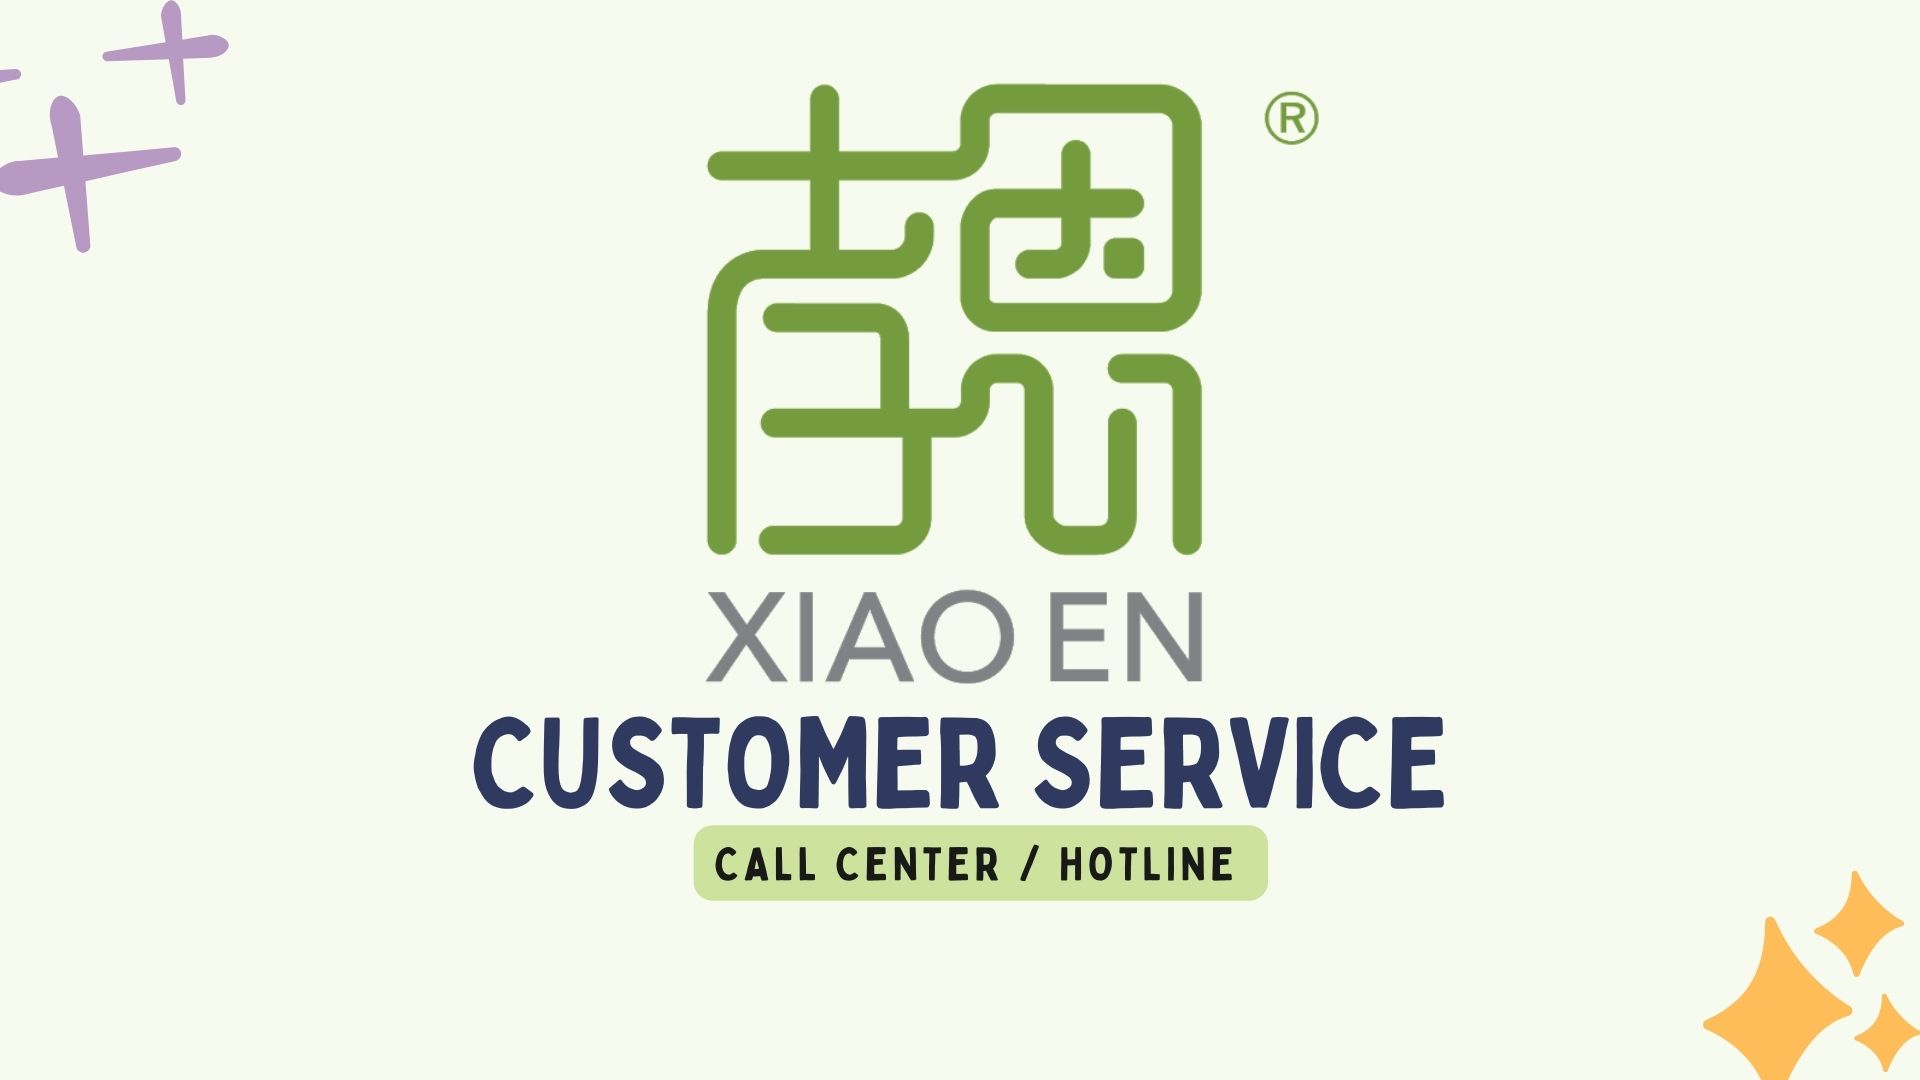 Xiao En Customer Service